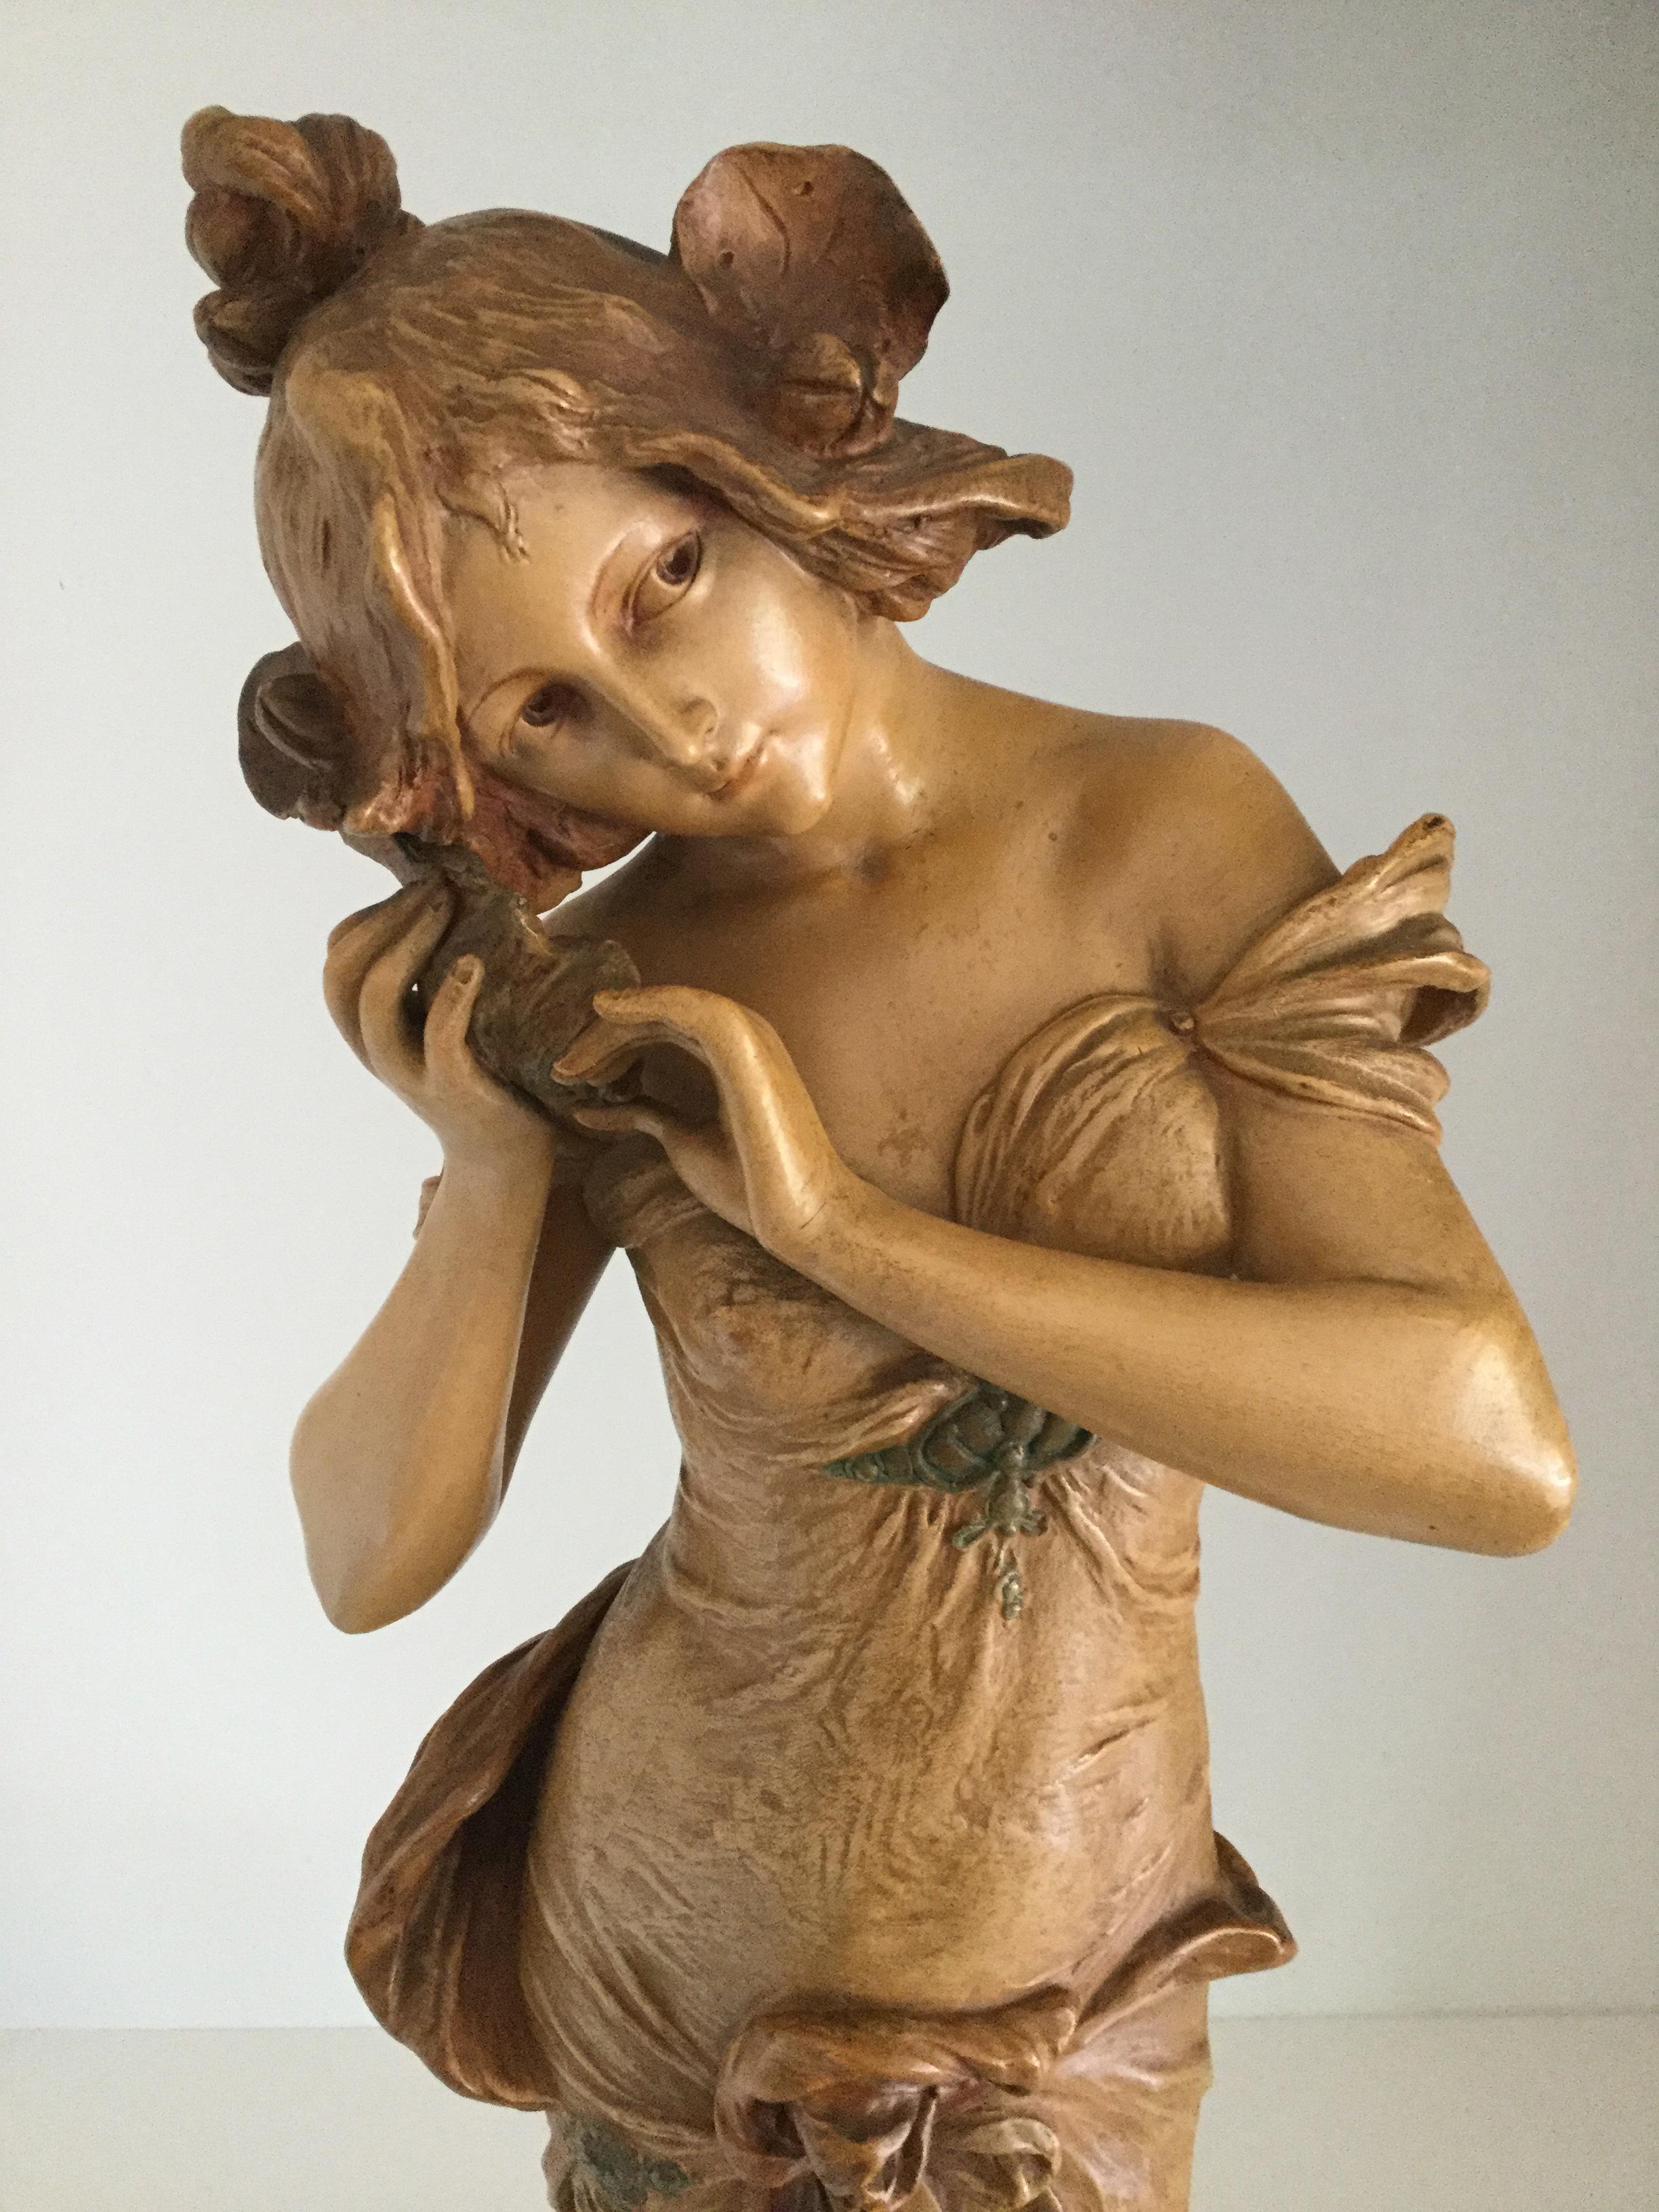 Figurine Art nouveau autrichienne Ernst Wahliss, vers 1880

Ernst Wahliss (1837-1900), figure sculpturale en céramique Art nouveau autrichien d'une jeune fille semi-drapée écoutant un coquillage, modelée dans une longue robe en cascade aux tons